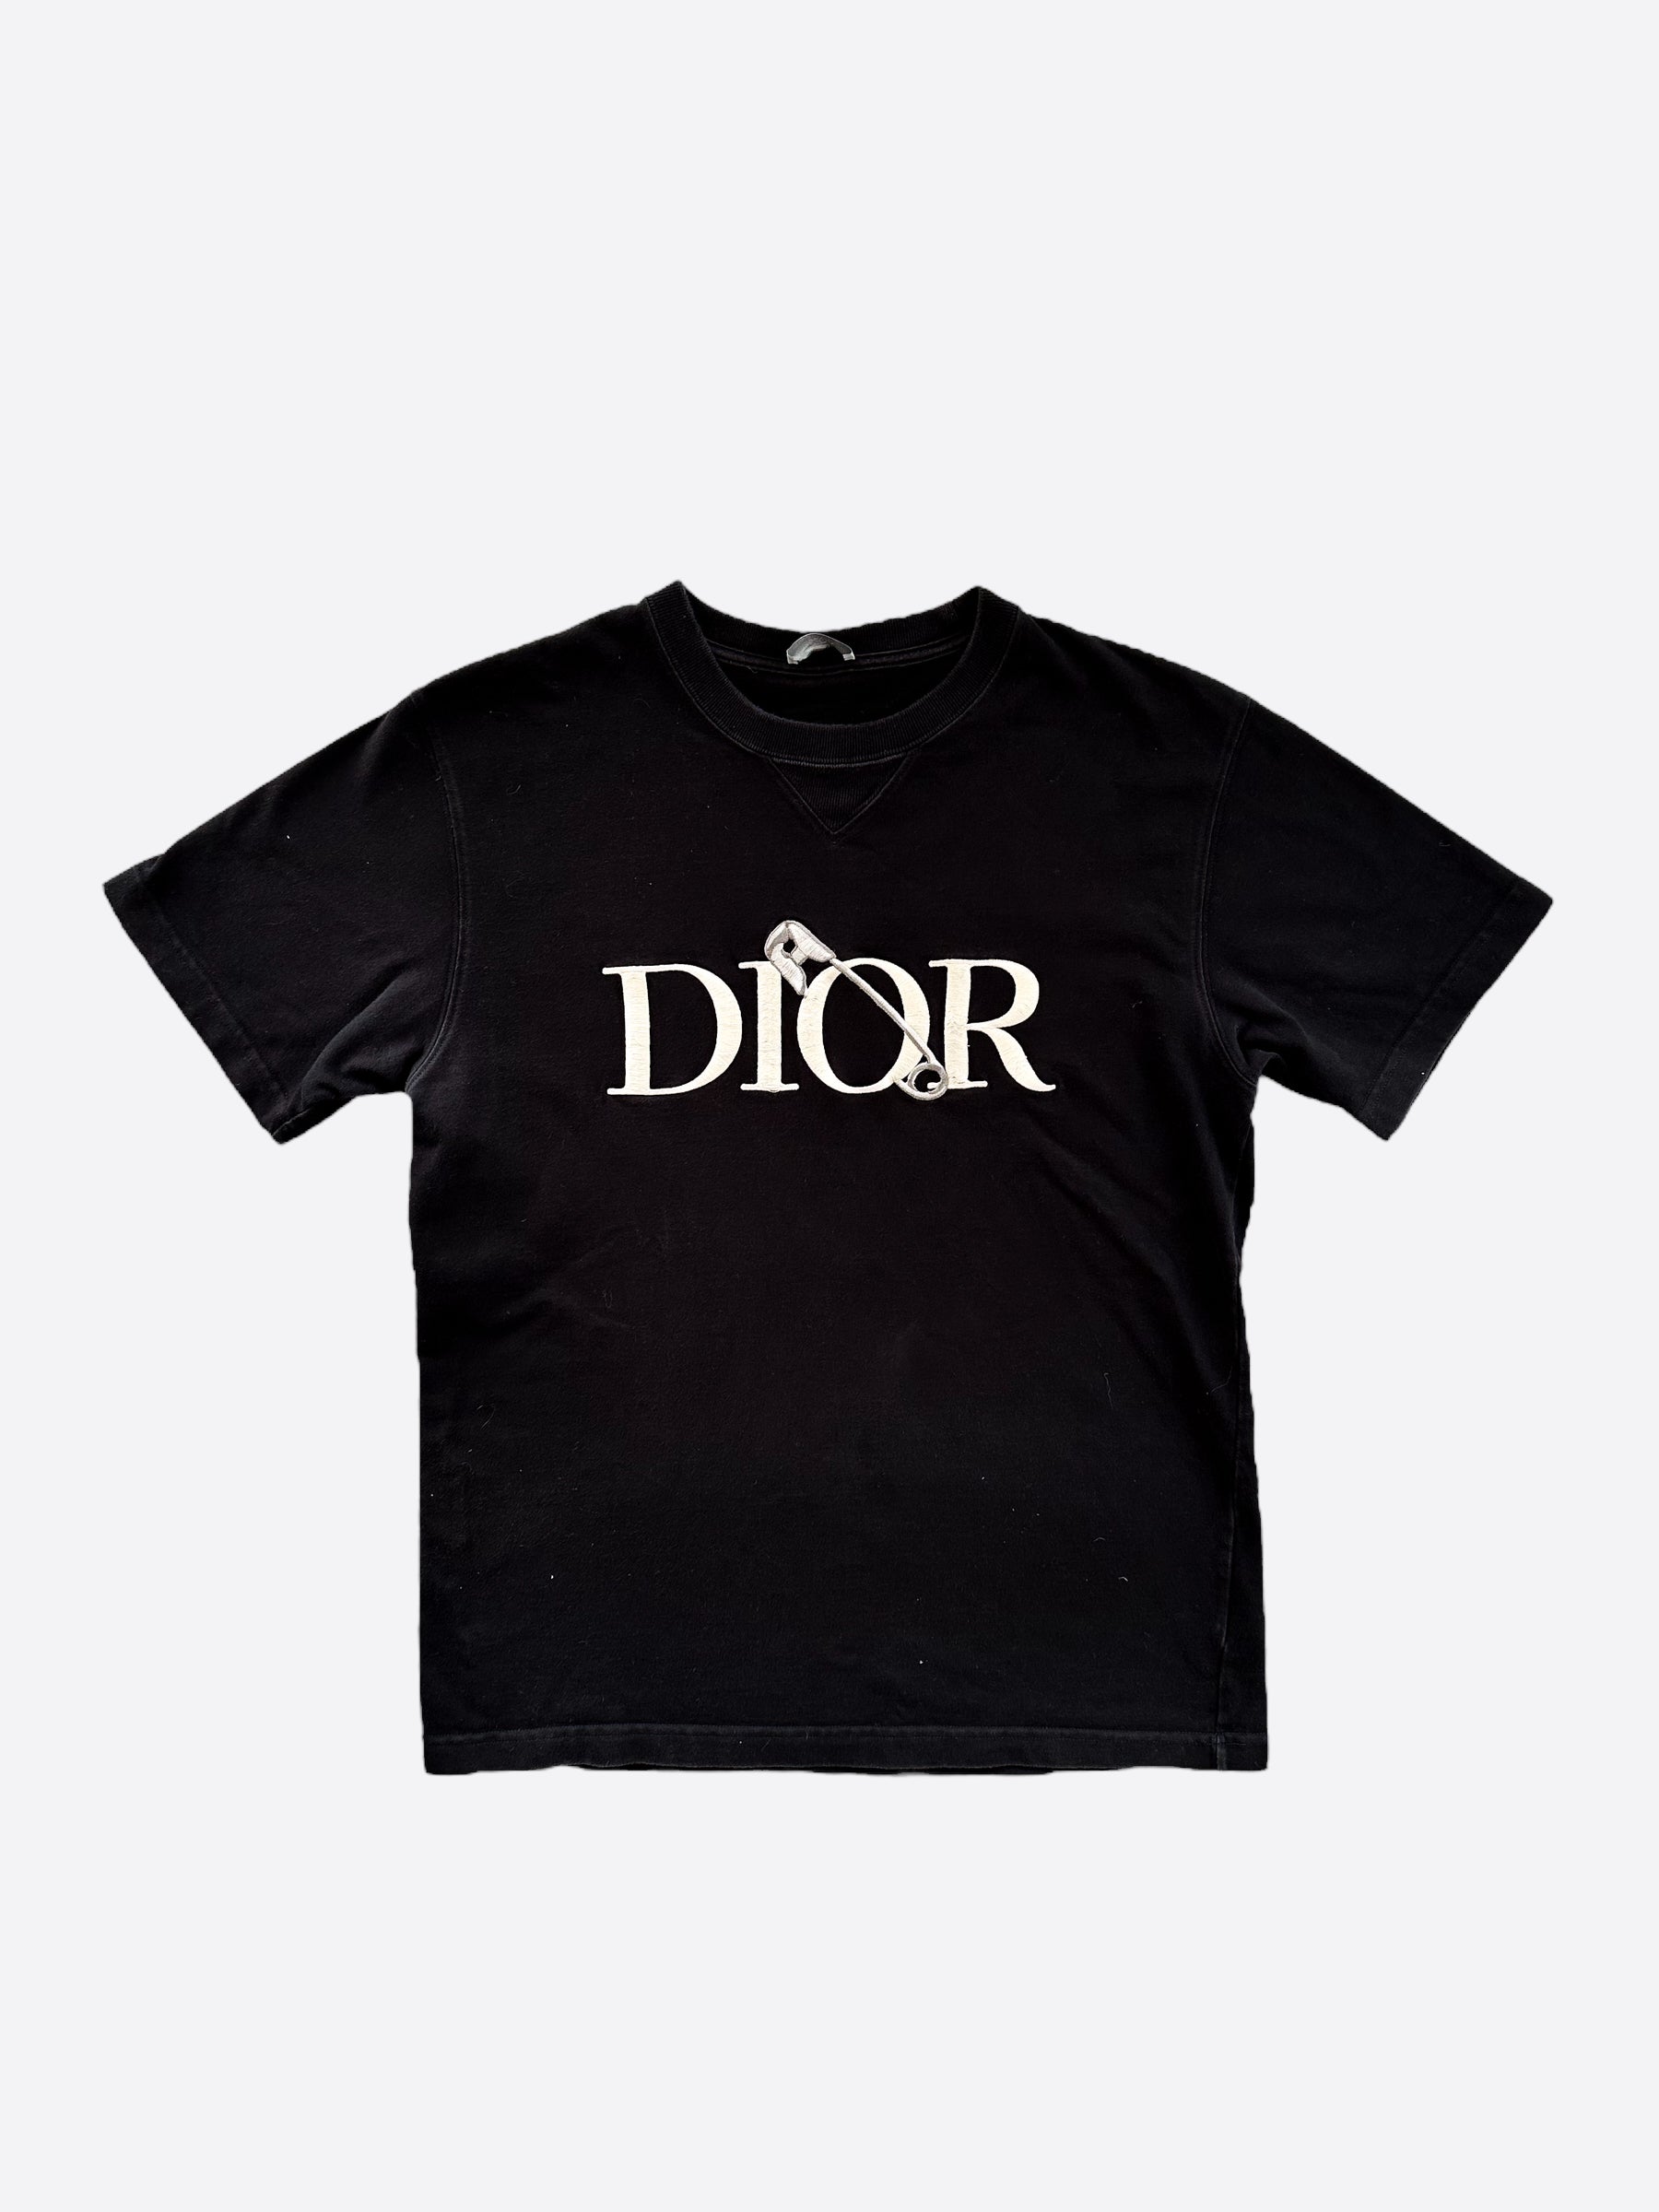 お手軽価格で贈りやすい Judy Tシャツ Dior 完売レア Blameコラボ S ...